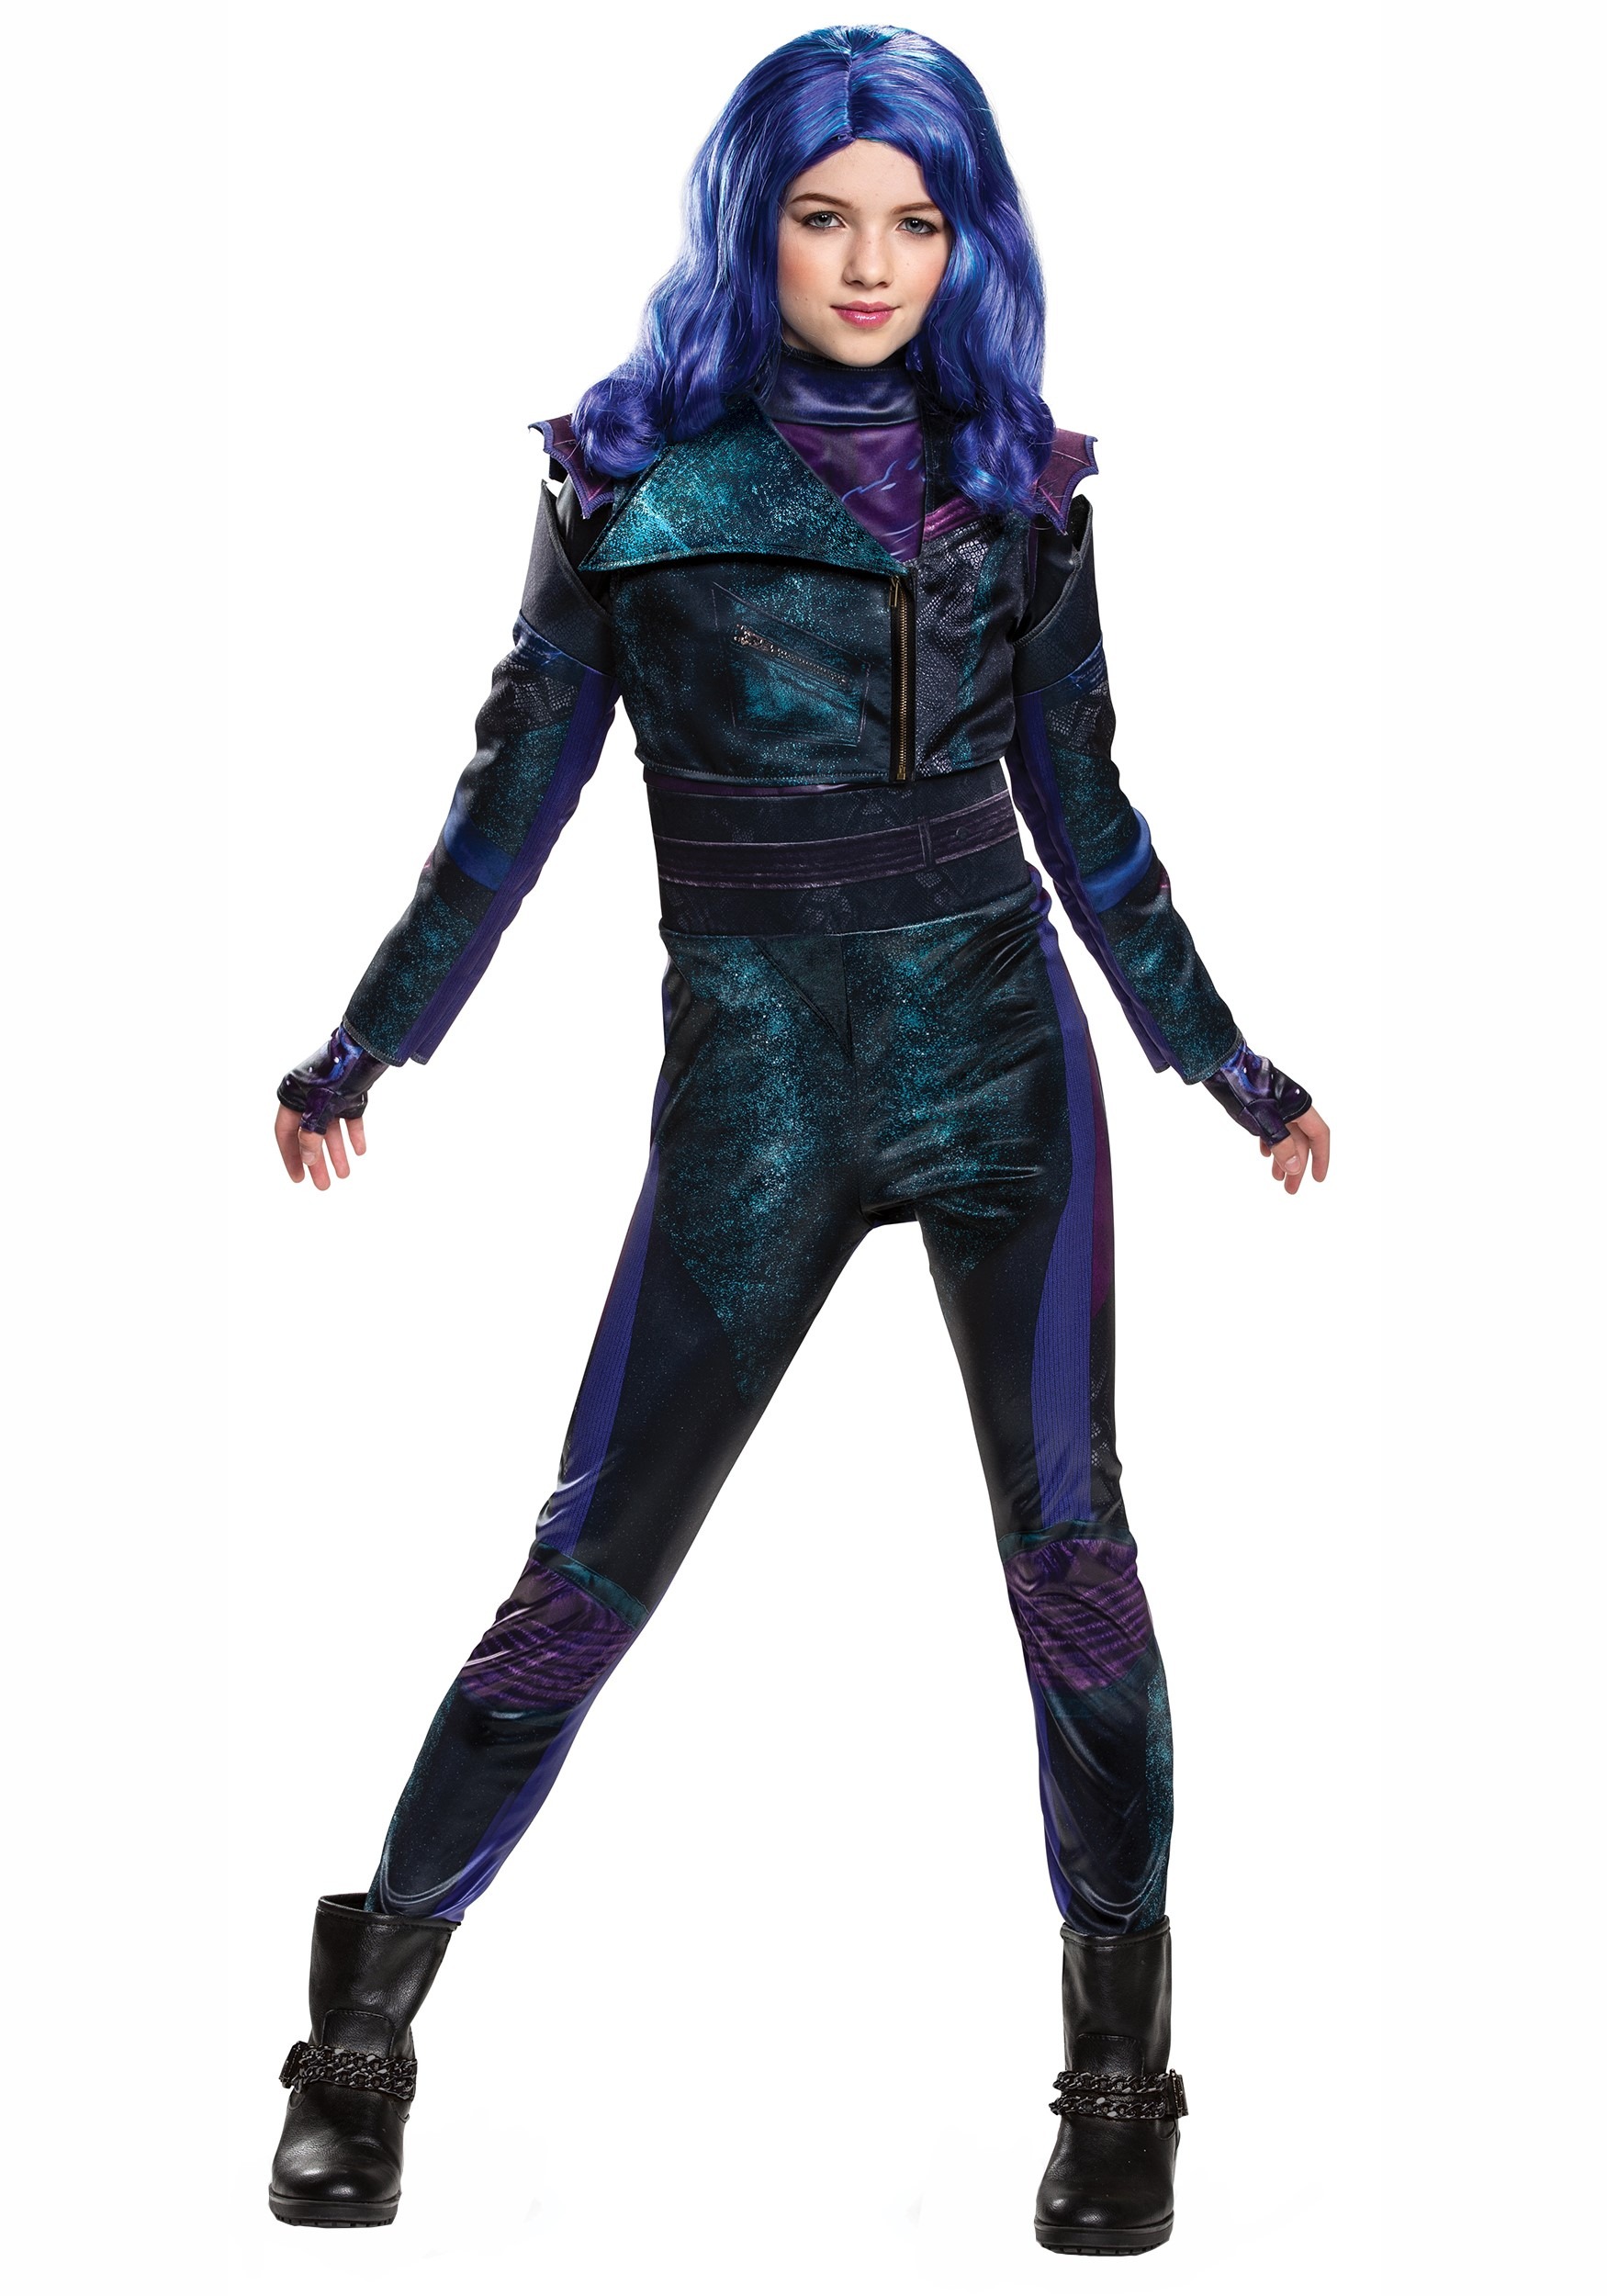 Descendants 3 Dragon Queen Mal Purple Dress Disney Gown Cosplay